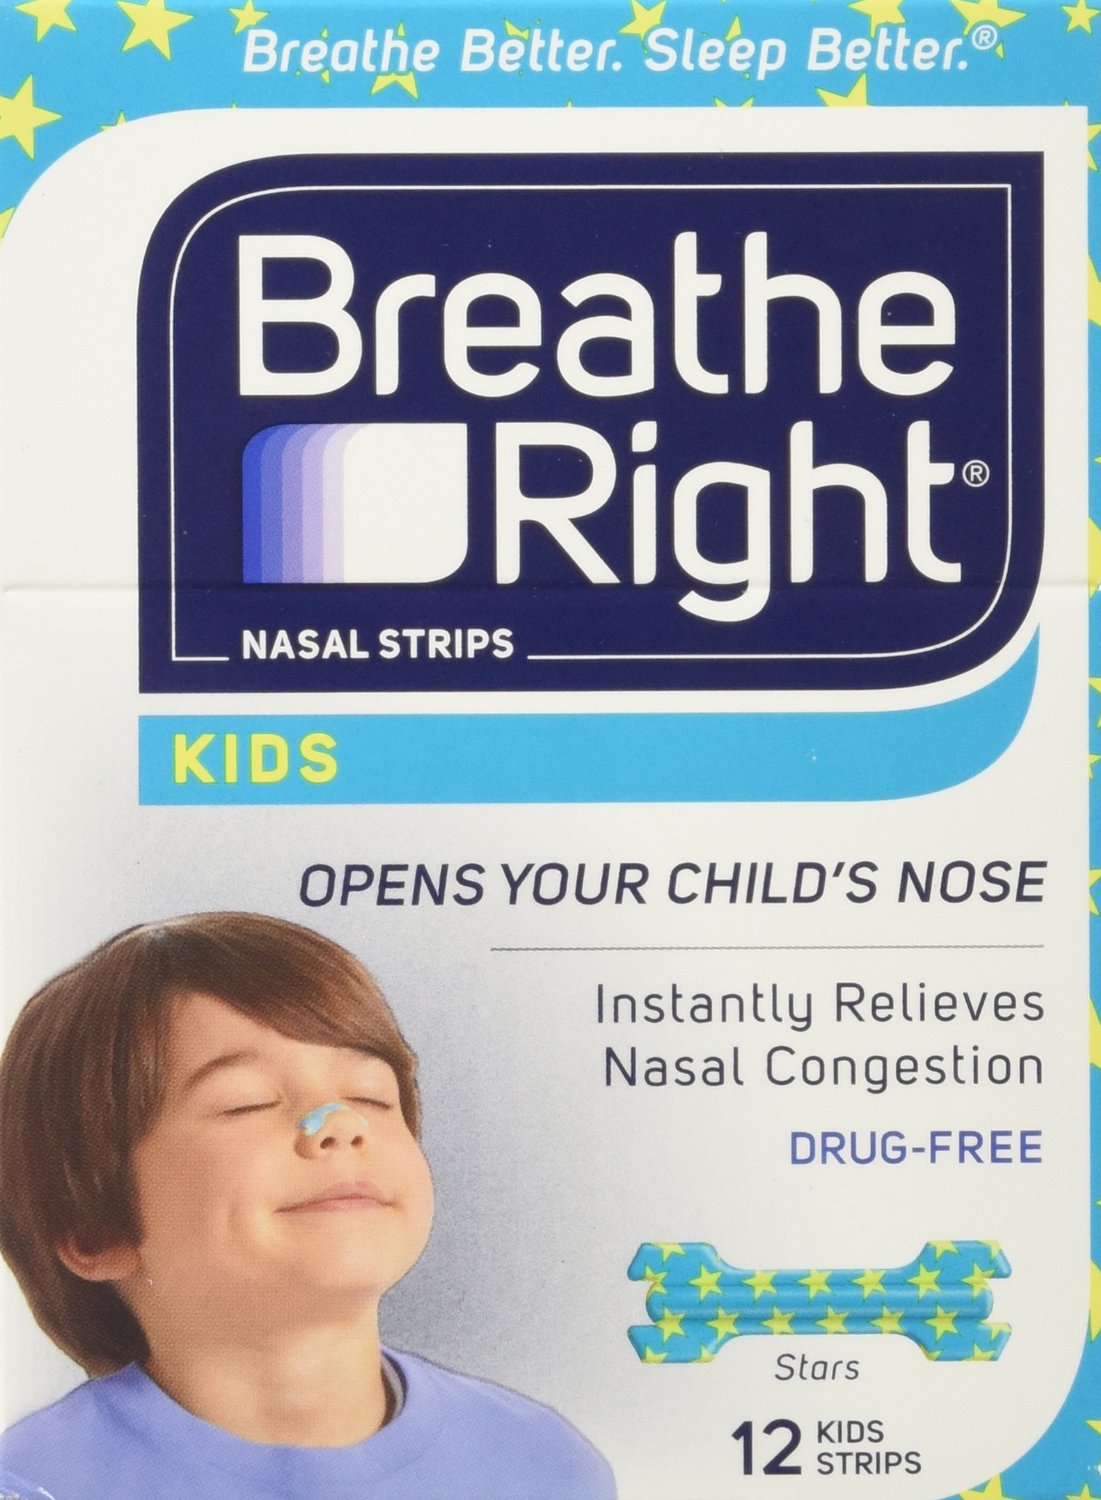 Beschreibung: Schnarchen bei Kindern – Atmen Sie richtig Zäpfchen.